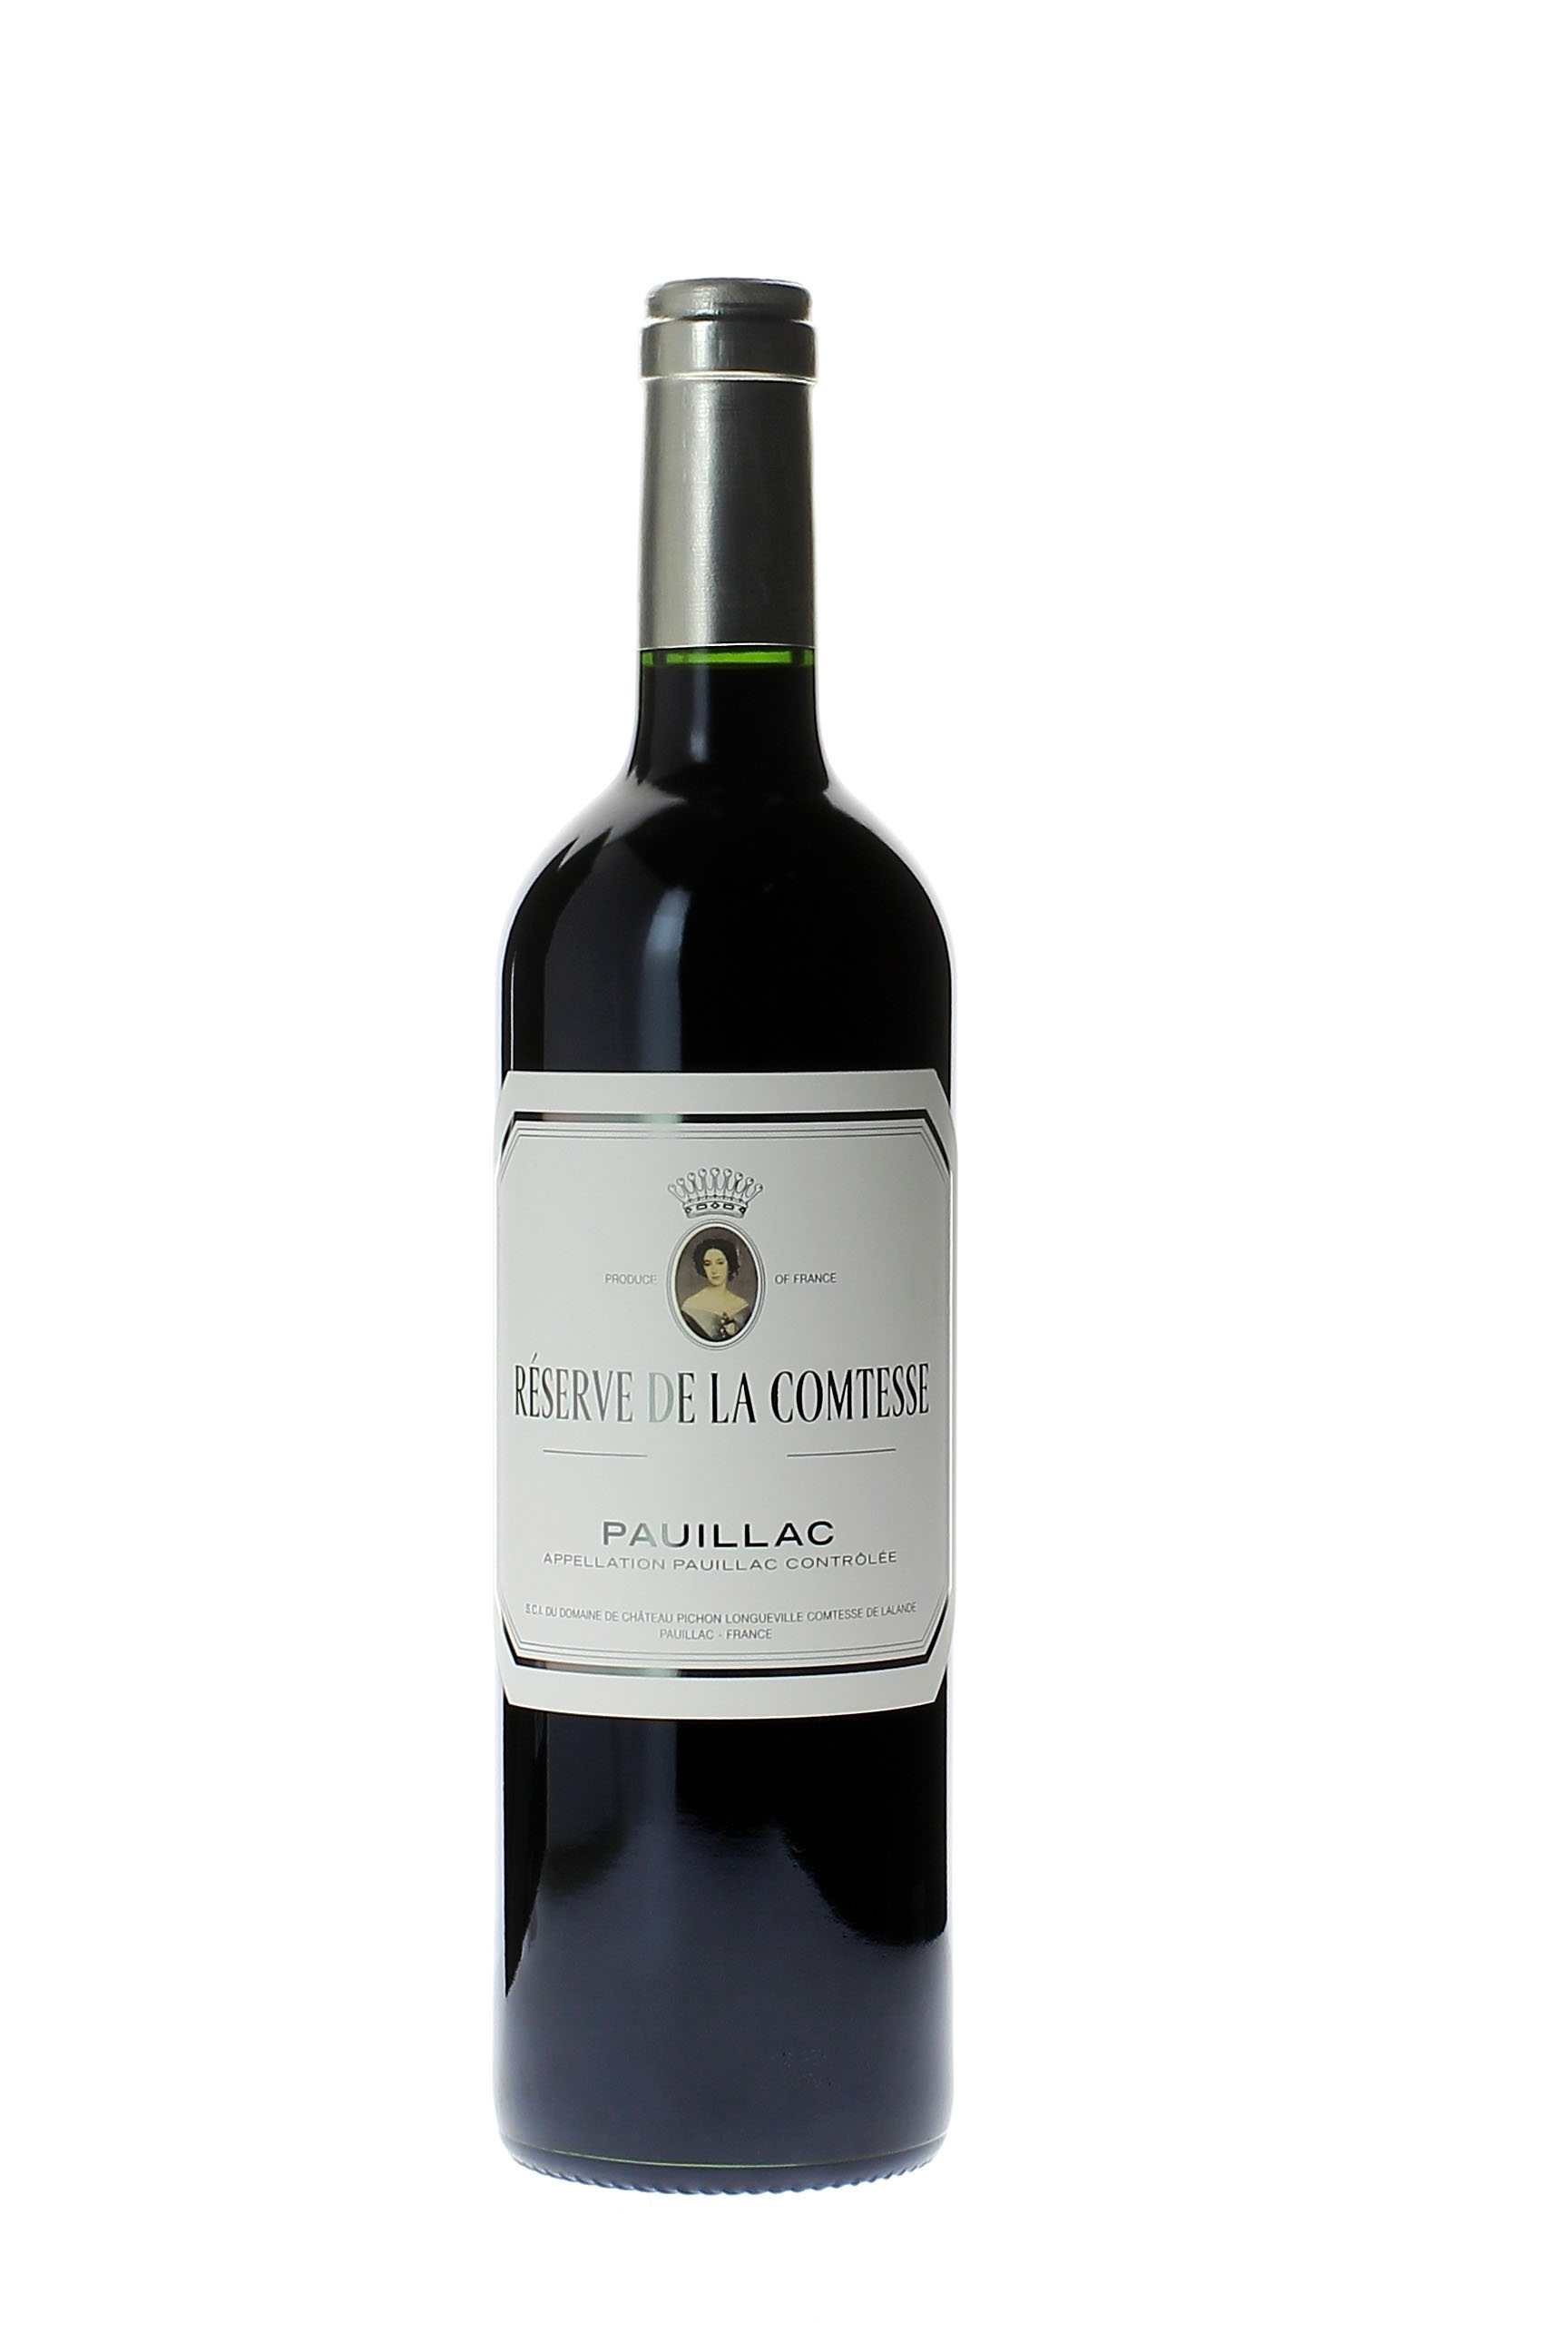 Reserve de la comtesse 2000 2nd Vin de Pichon Comtesse Pauillac, Bordeaux rouge